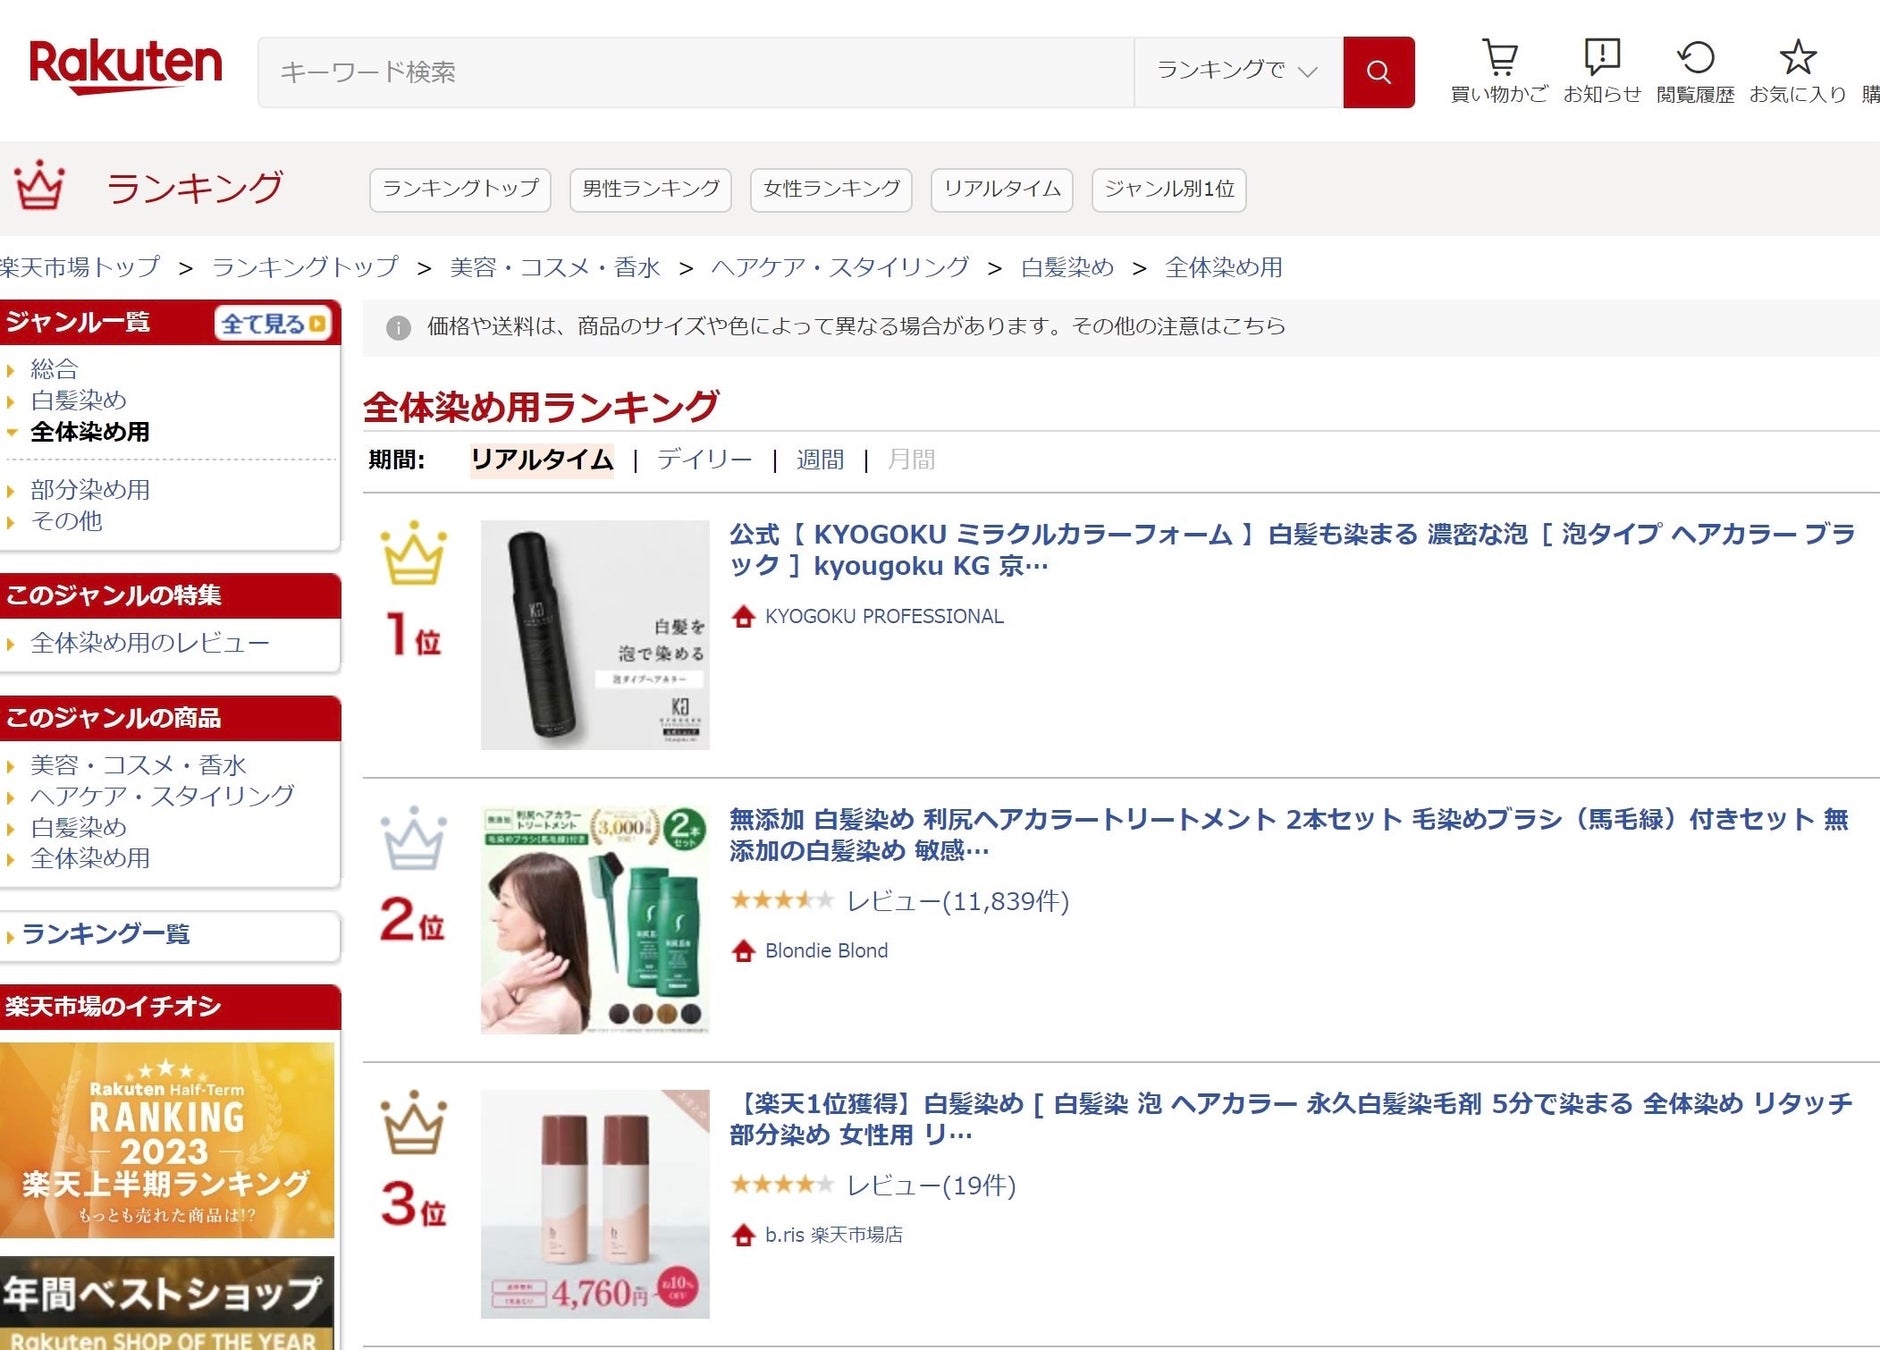 【KYOGOKU PROFESSIONAL】より新発売されました「ミラクルカラーフォーム」が楽天市場の「白髪染/前染めようランキング」で1位を獲得いたしました！